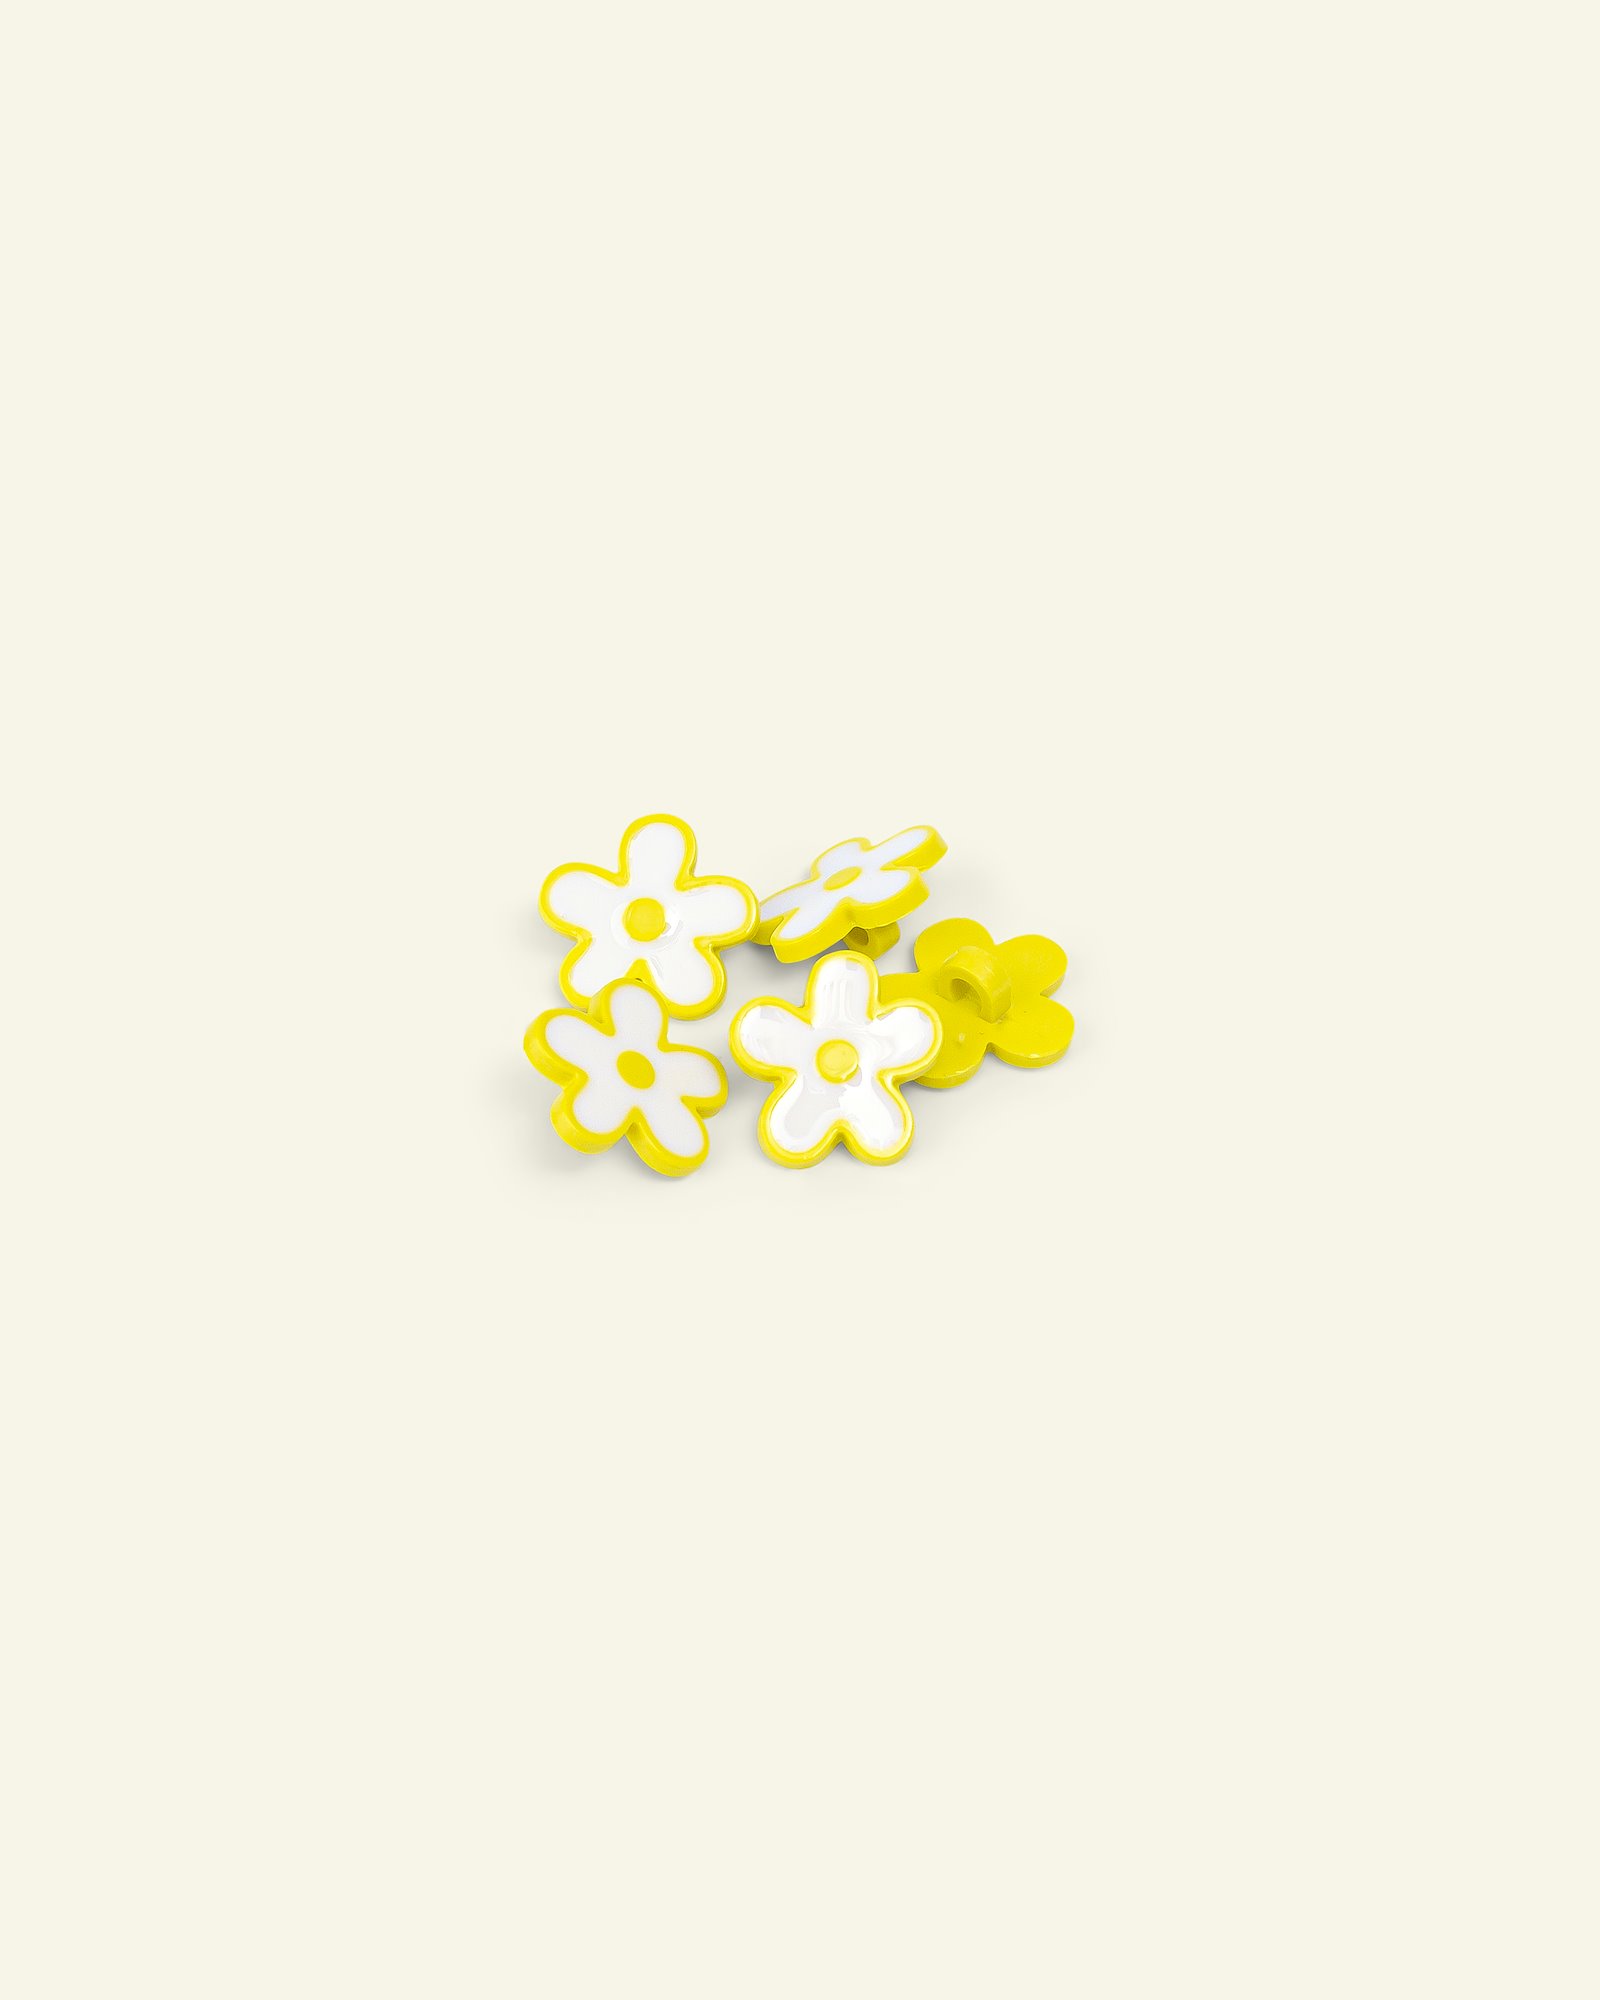 Øyeknapp blomst 15mm gul/hvit 5stk. 33296_pack